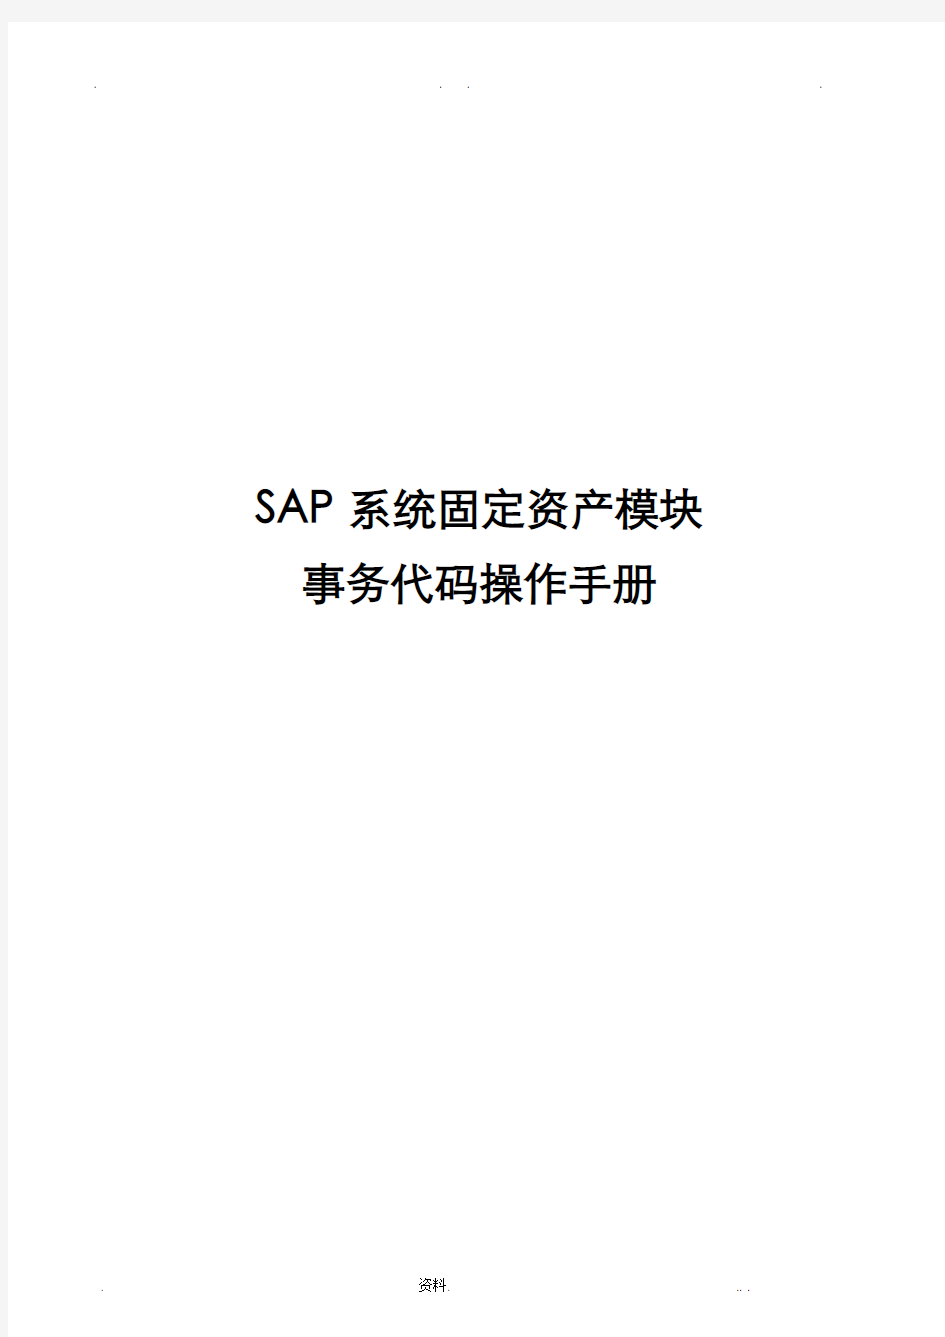 SAP固定资产计提减值准备重估法操作手册